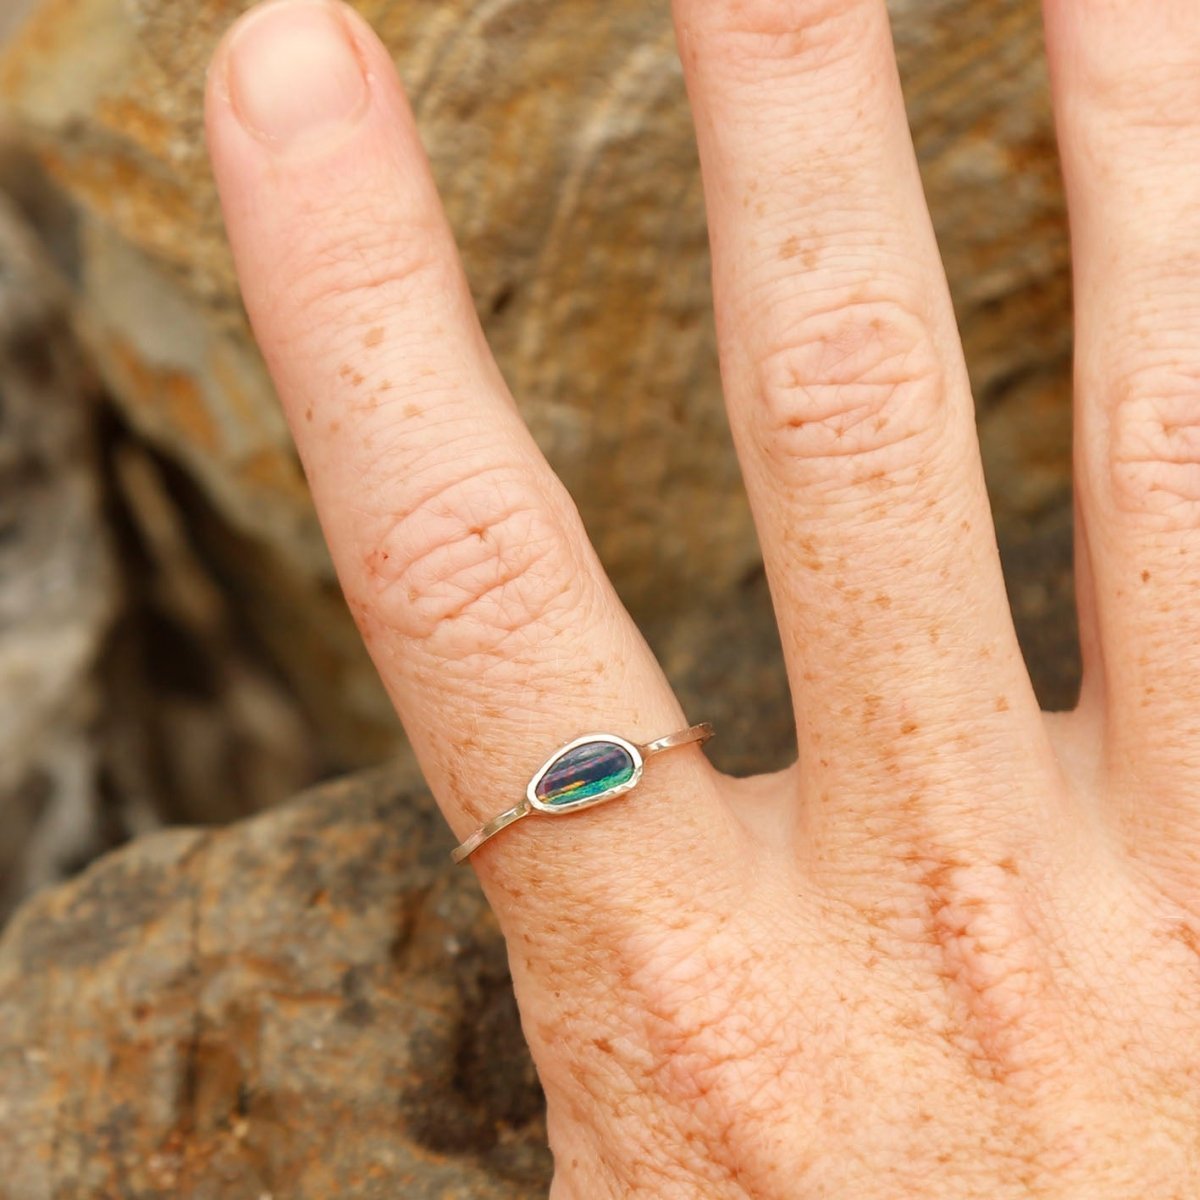 wearing an opal ring